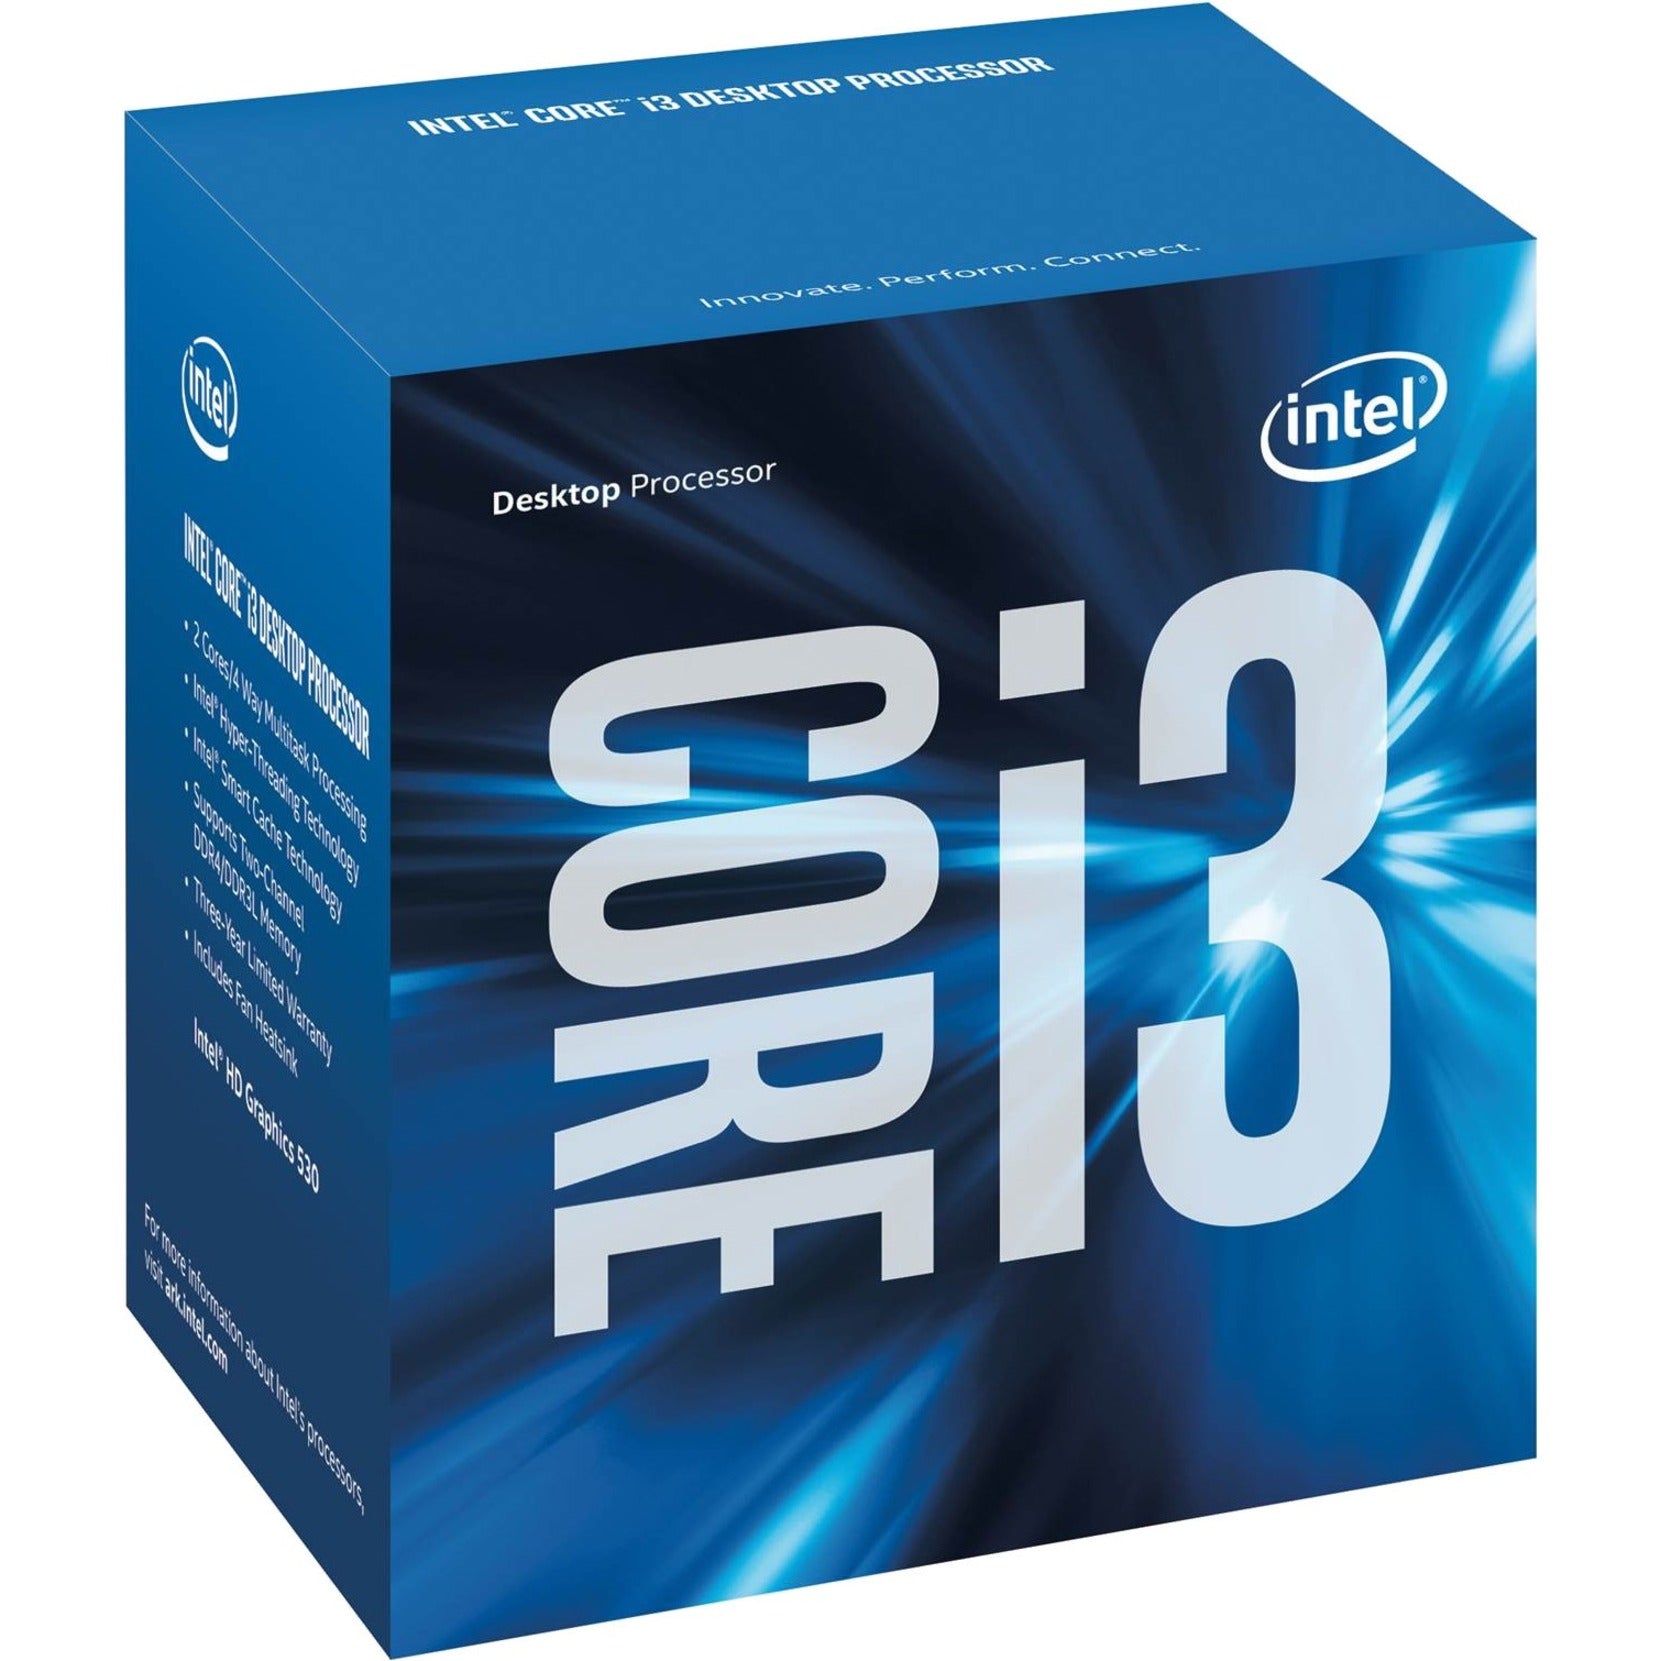 Intel BX80662I36100 Core i3-6100 Dual-core i3-6100 3.7 GHz Desktop Processor, 14nm, 3MB Cache